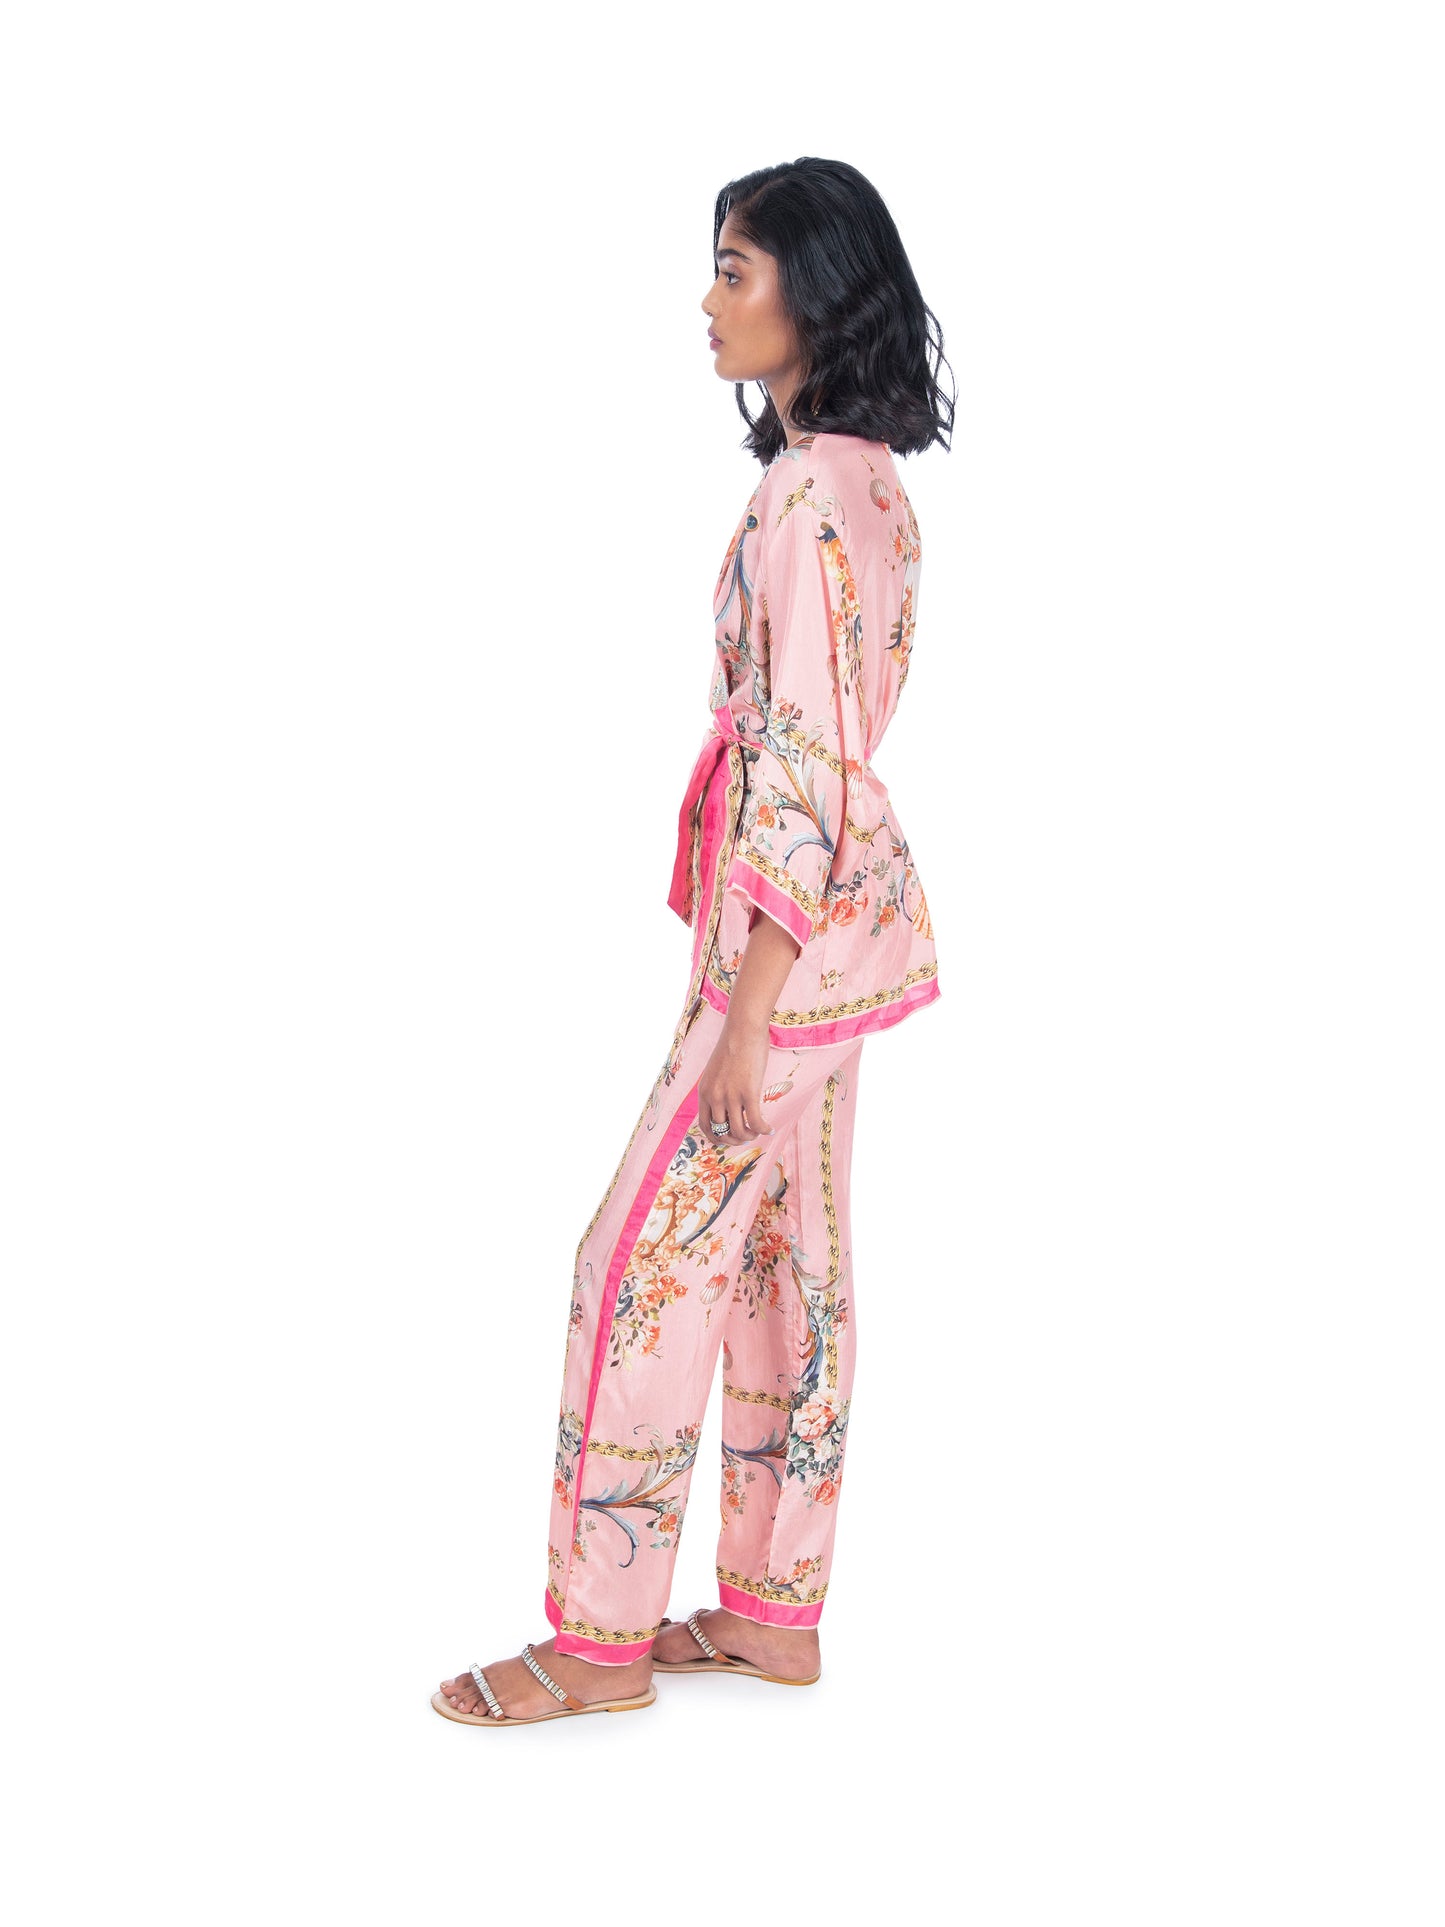 Pink Printed Wrap/Jacket Style Kurti & Pant Set.